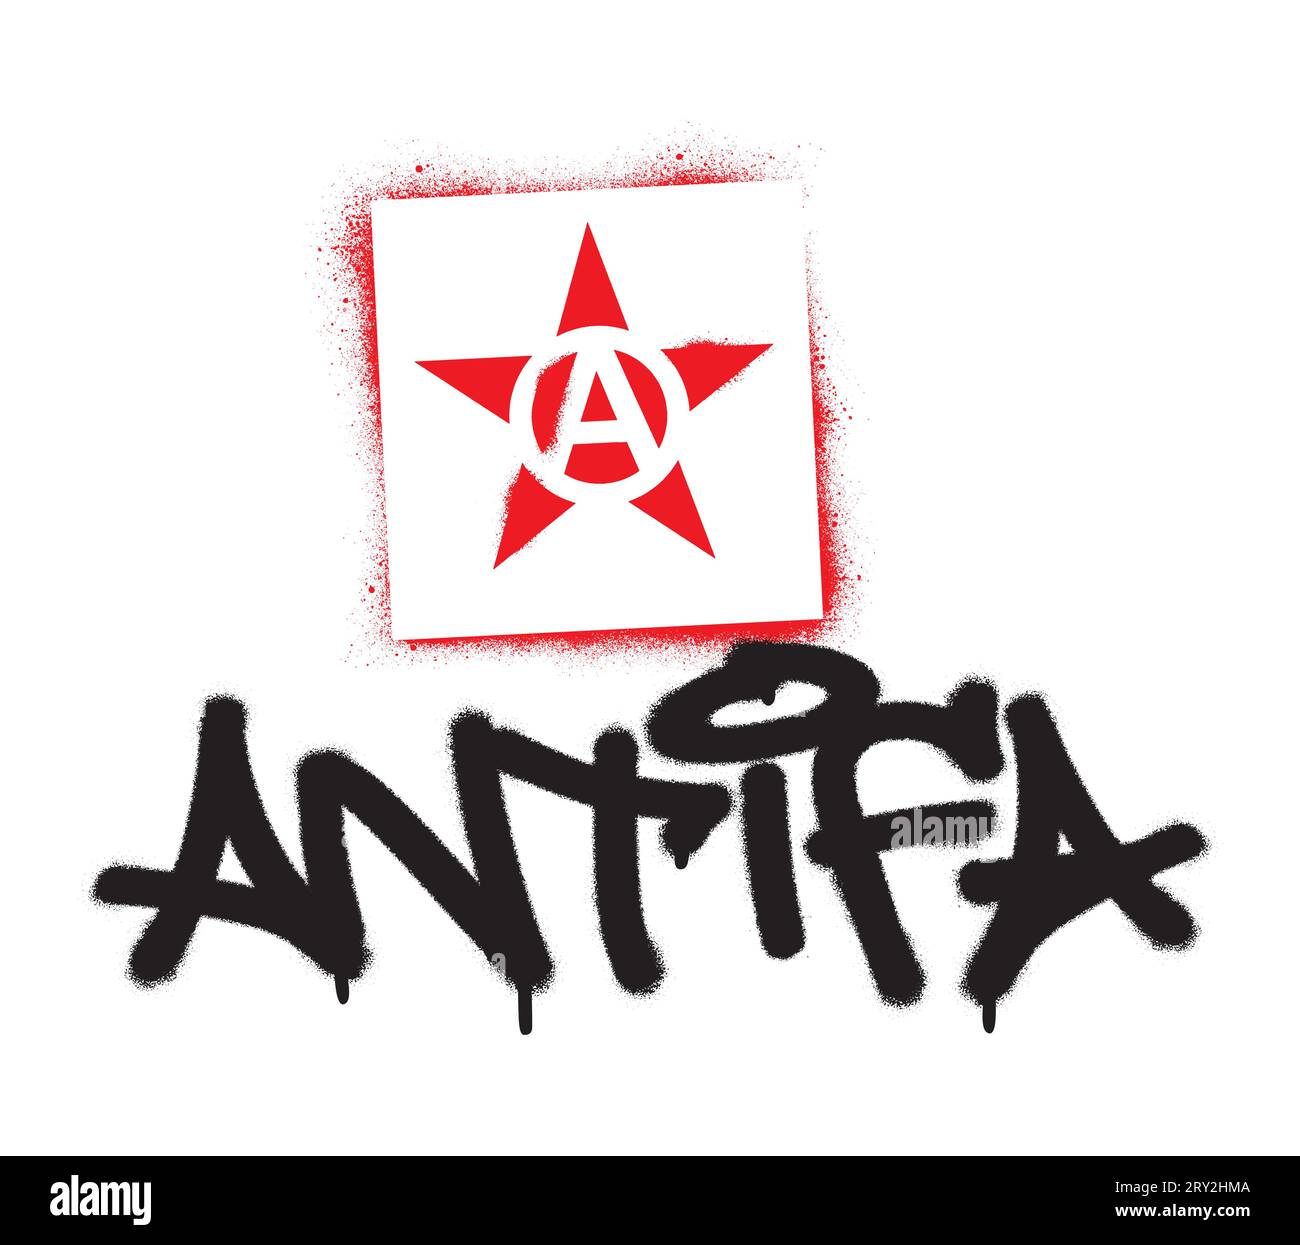 Stencil a stella rossa e graffiti con vernice spray ANTIFA tag. Nome comune per antifascisti militanti e radicali, comunisti, di sinistra e anarchici. Illustrazione Vettoriale